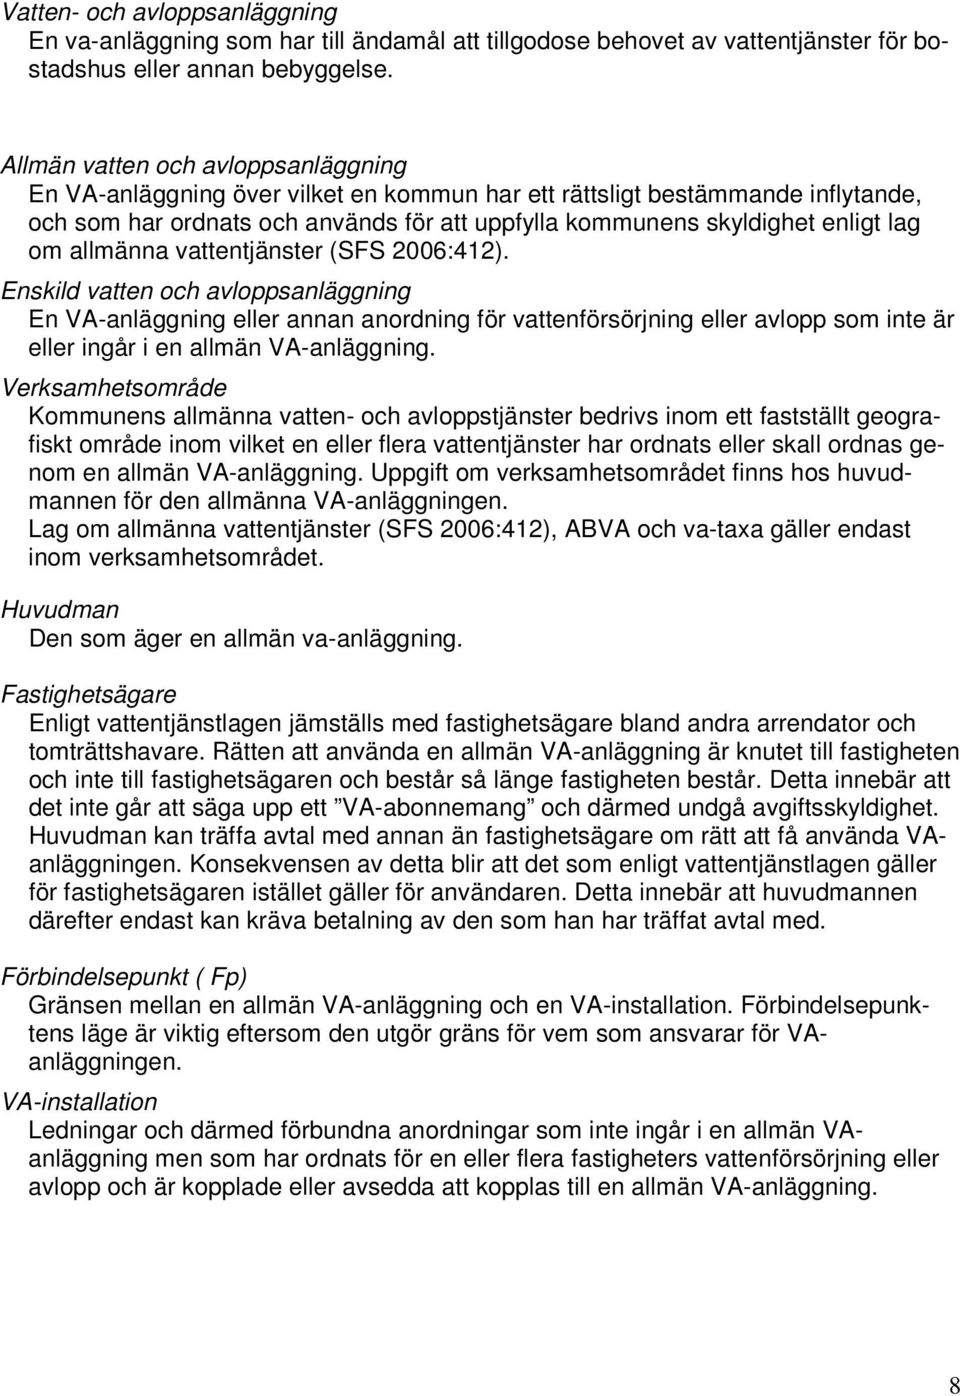 om allmänna vattentjänster (SFS 2006:412).